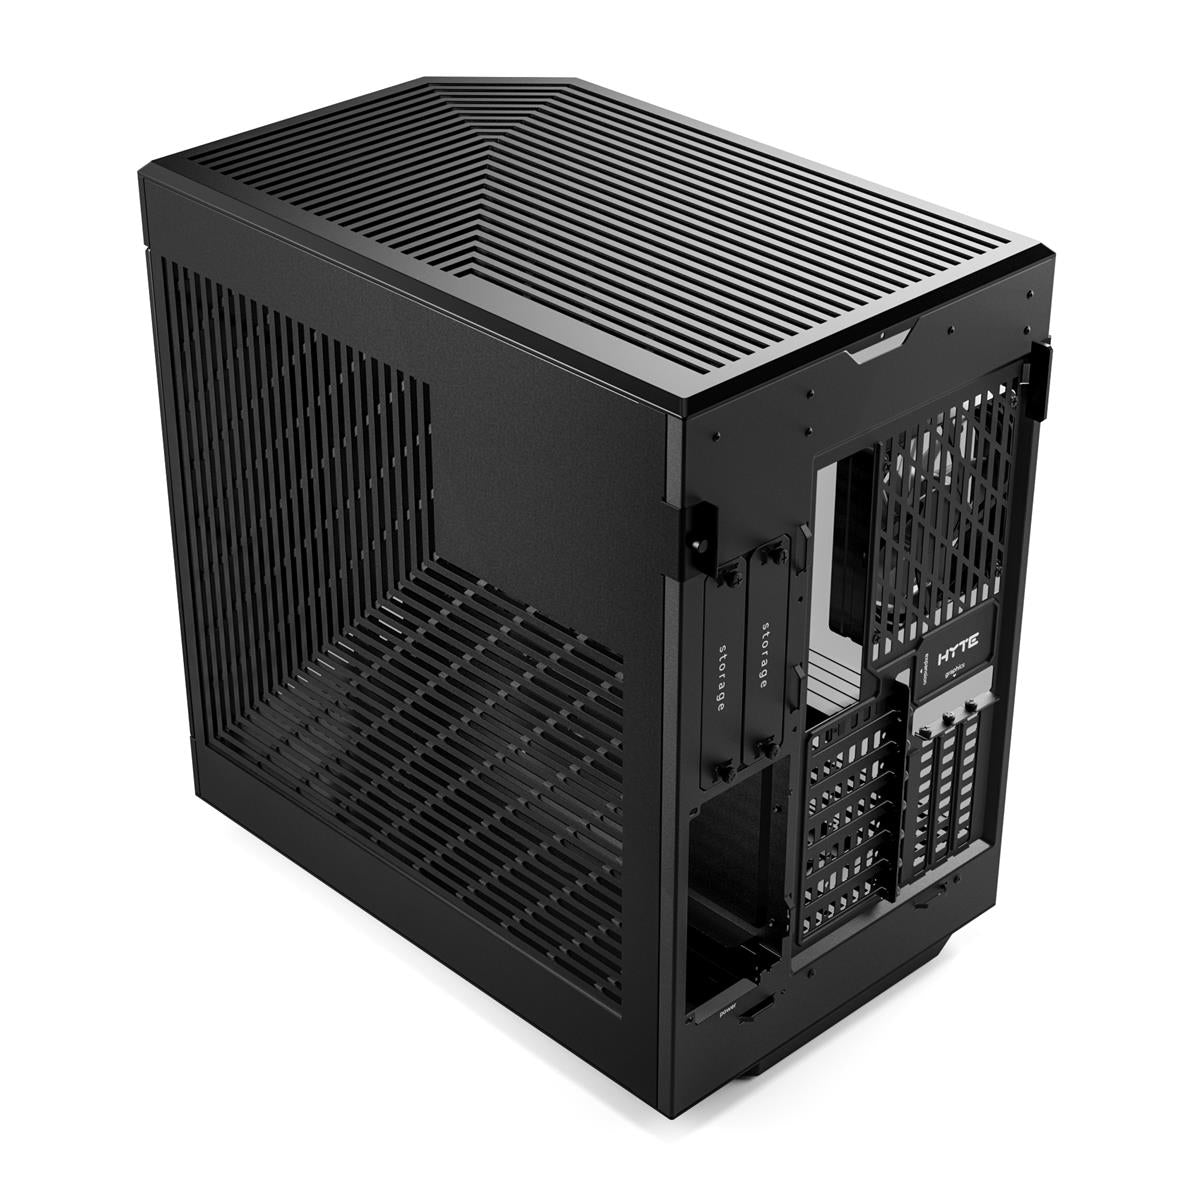 HYTE Y60 - BLACK - Mid-Tower Case - Desktop Computer & Server Cases - Gamertech.shop